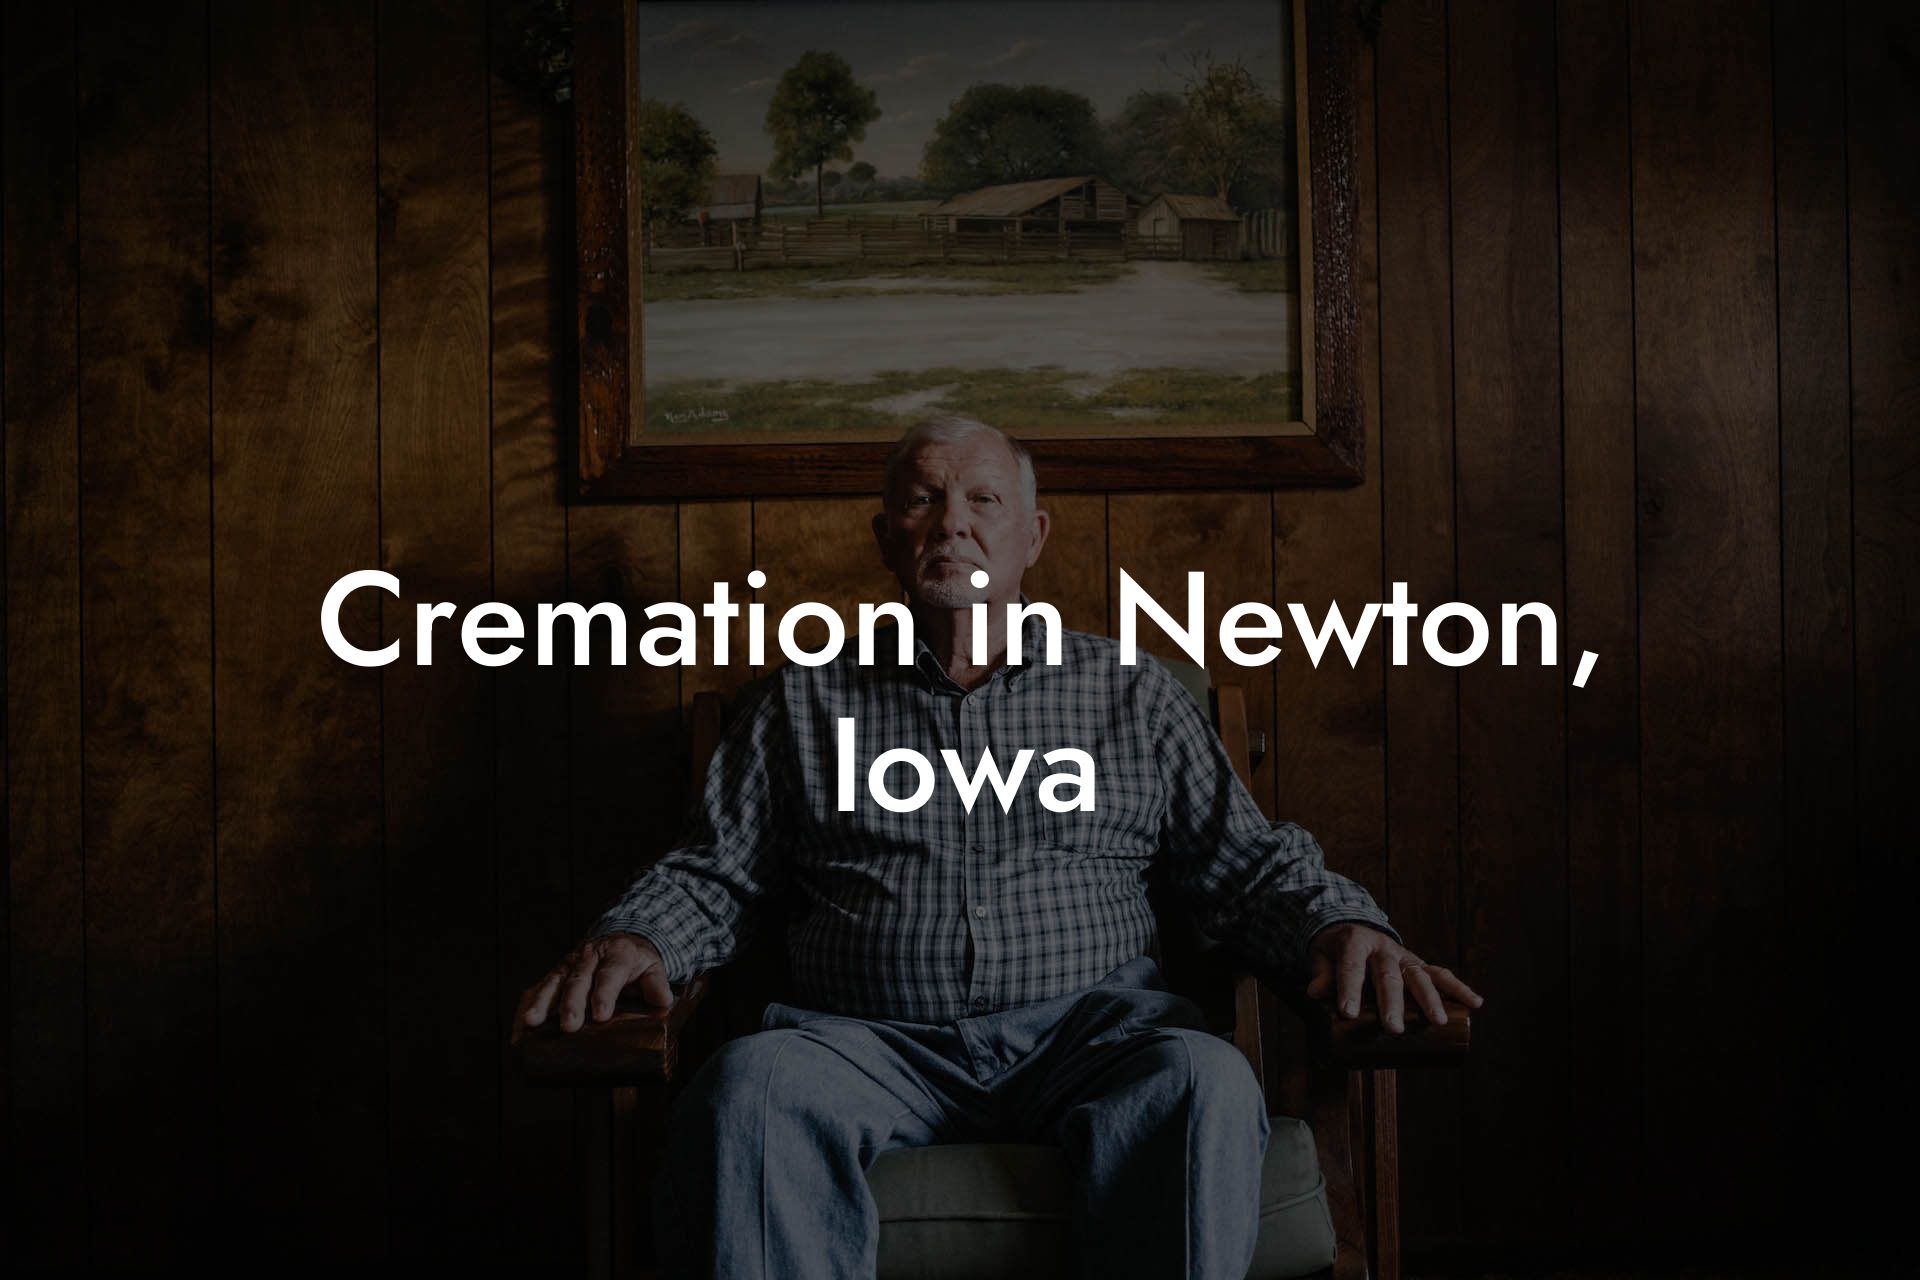 Cremation in Newton, Iowa